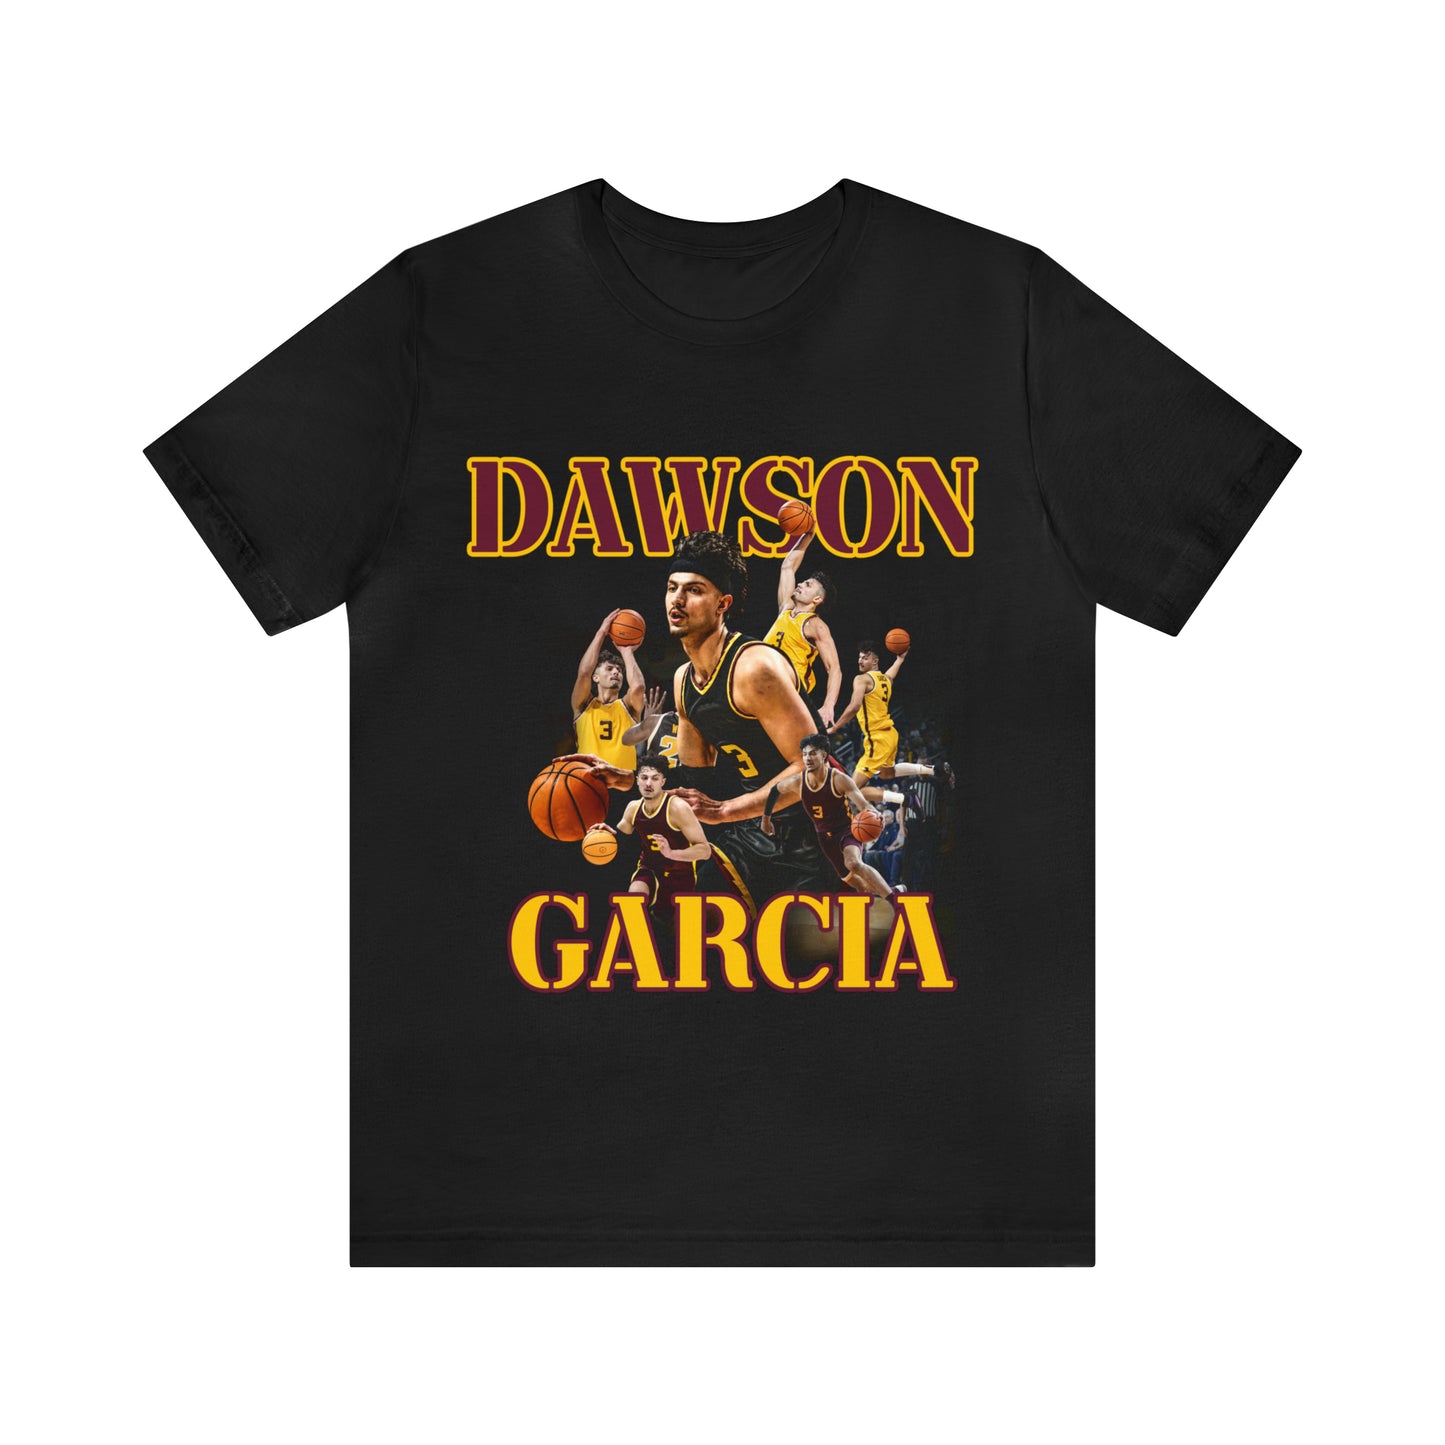 Dawson Garcia: GameDay Tee